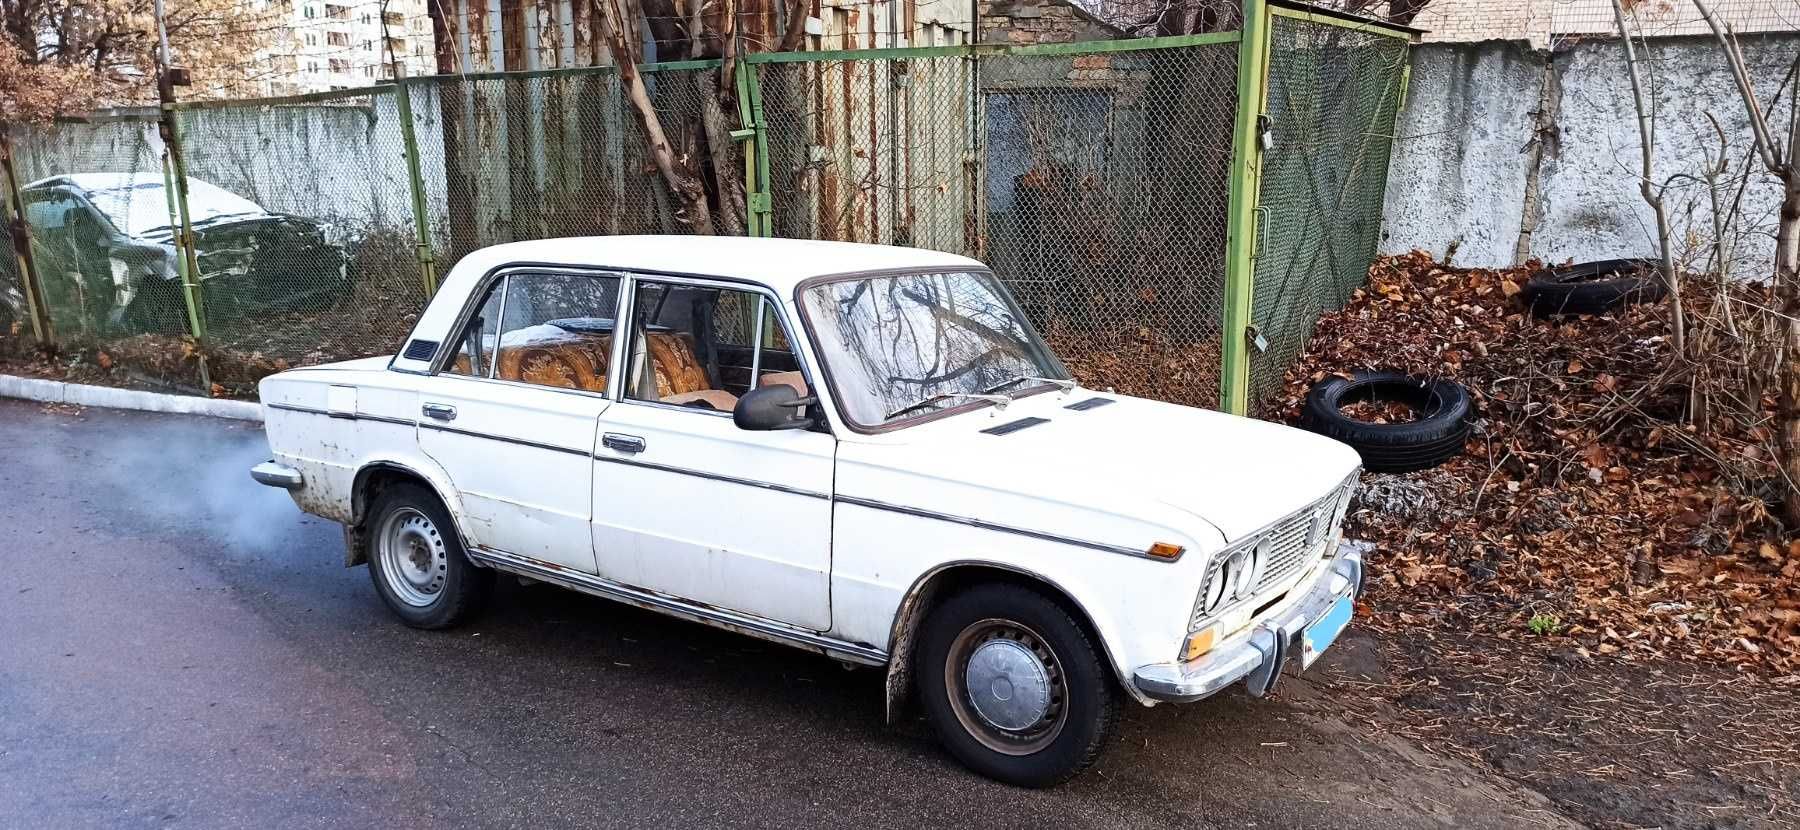 Продам НА ЗАПЧАСТИ автомобиль ВАЗ-2103, 1981 г.в. Газ/бензин БЕЗ ТОРГУ